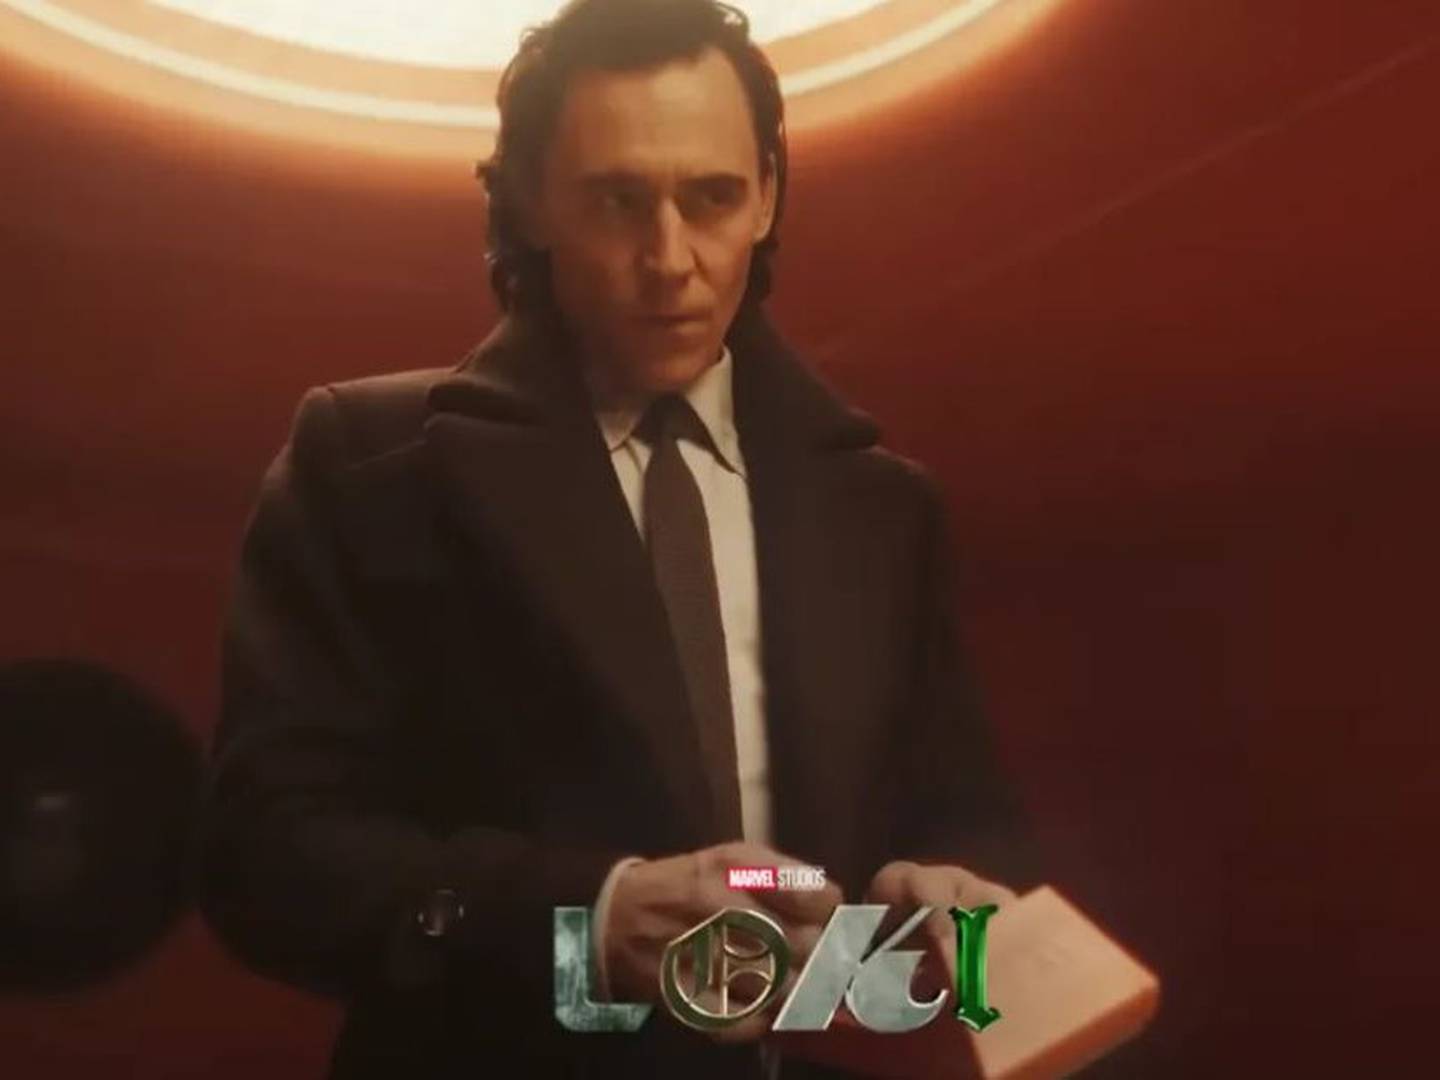 Loki temporada 2 capítulo 5 ONLINE GRATIS, cuántos capítulos tiene la  segunda temporada de Loki, Loki season 2, Owen Wilson, Disney Plus, Marvel